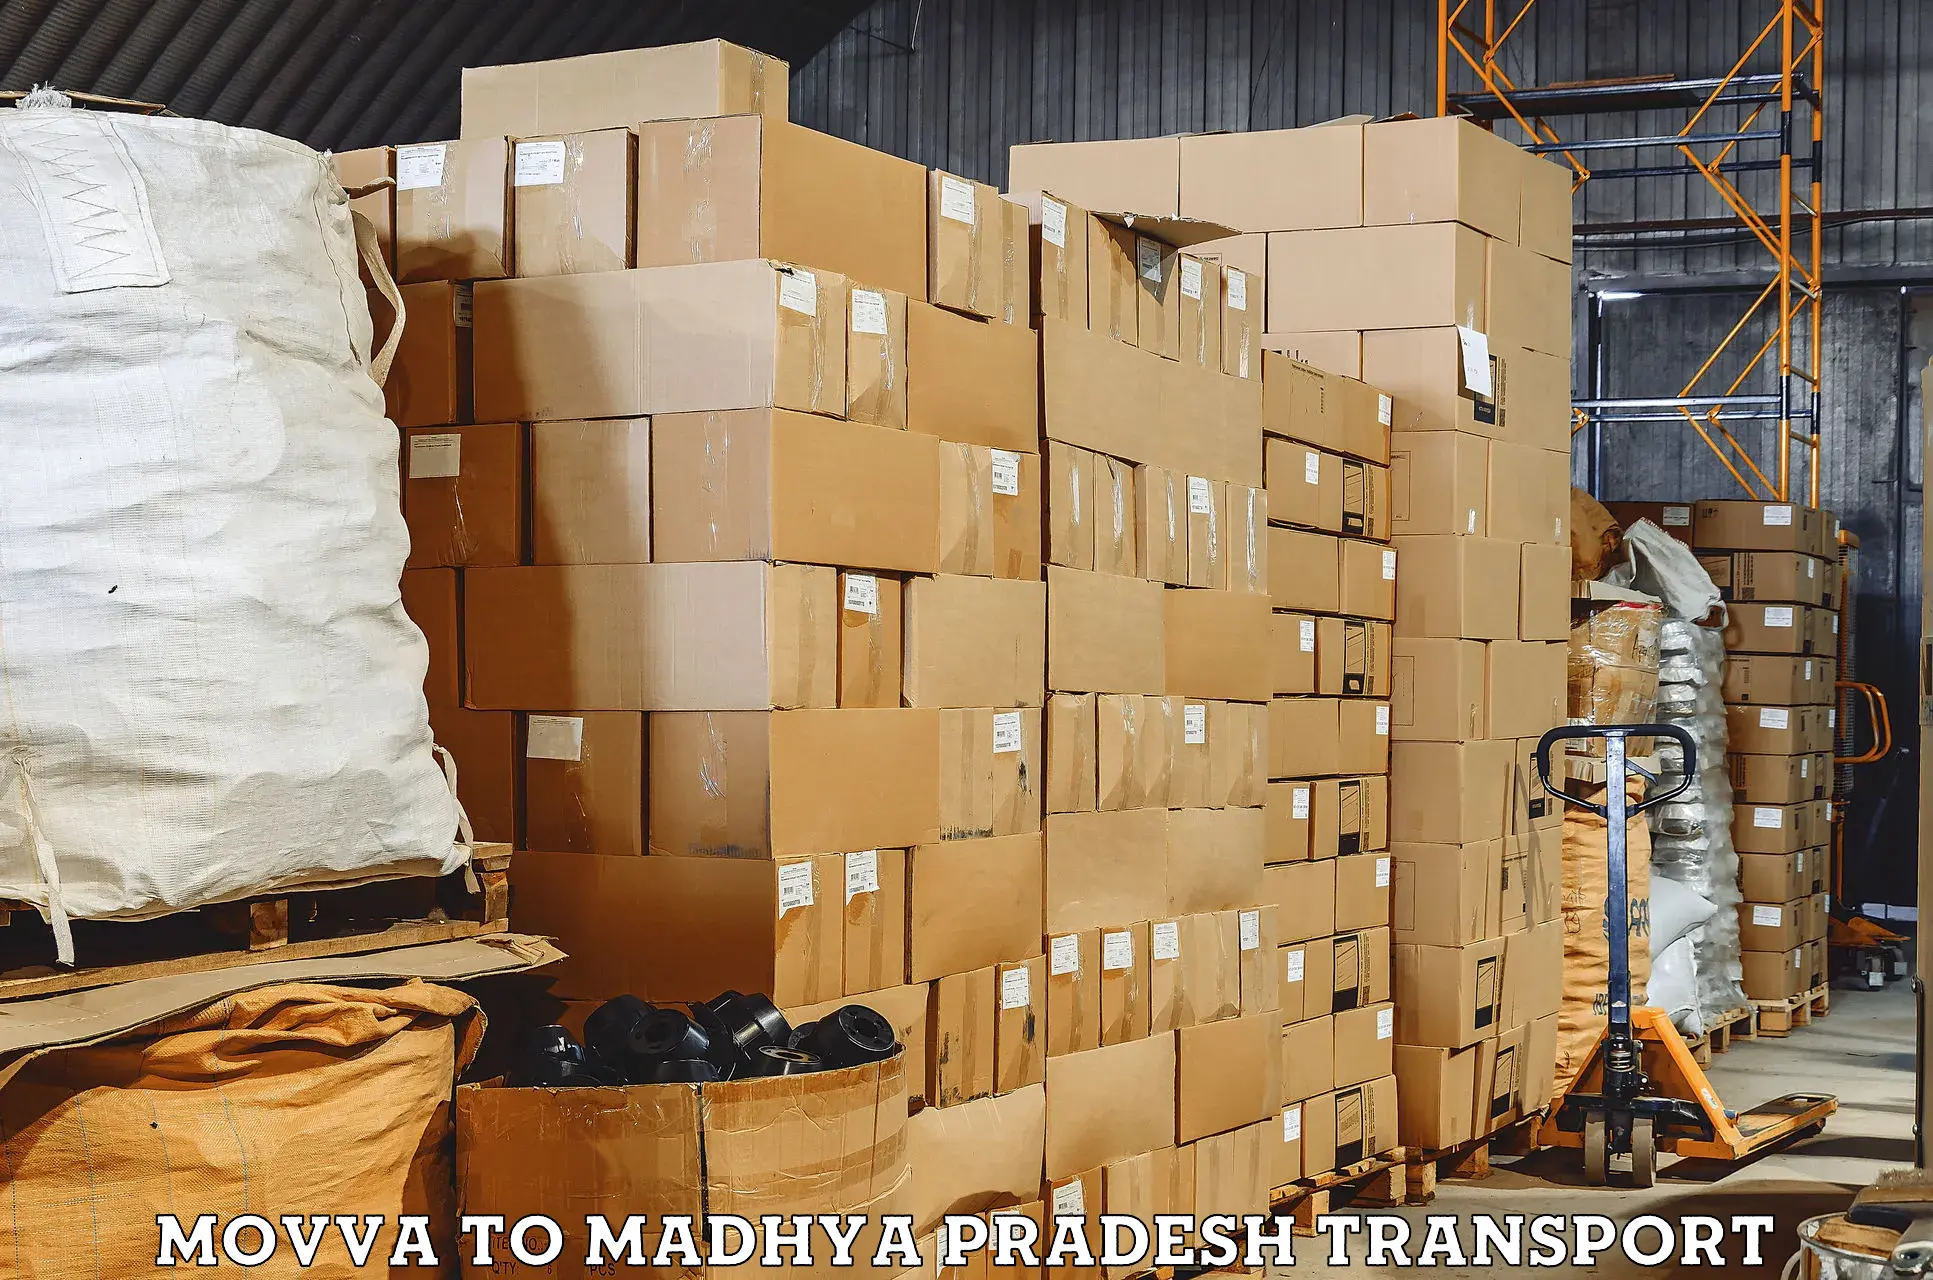 All India transport service Movva to Garh Rewa